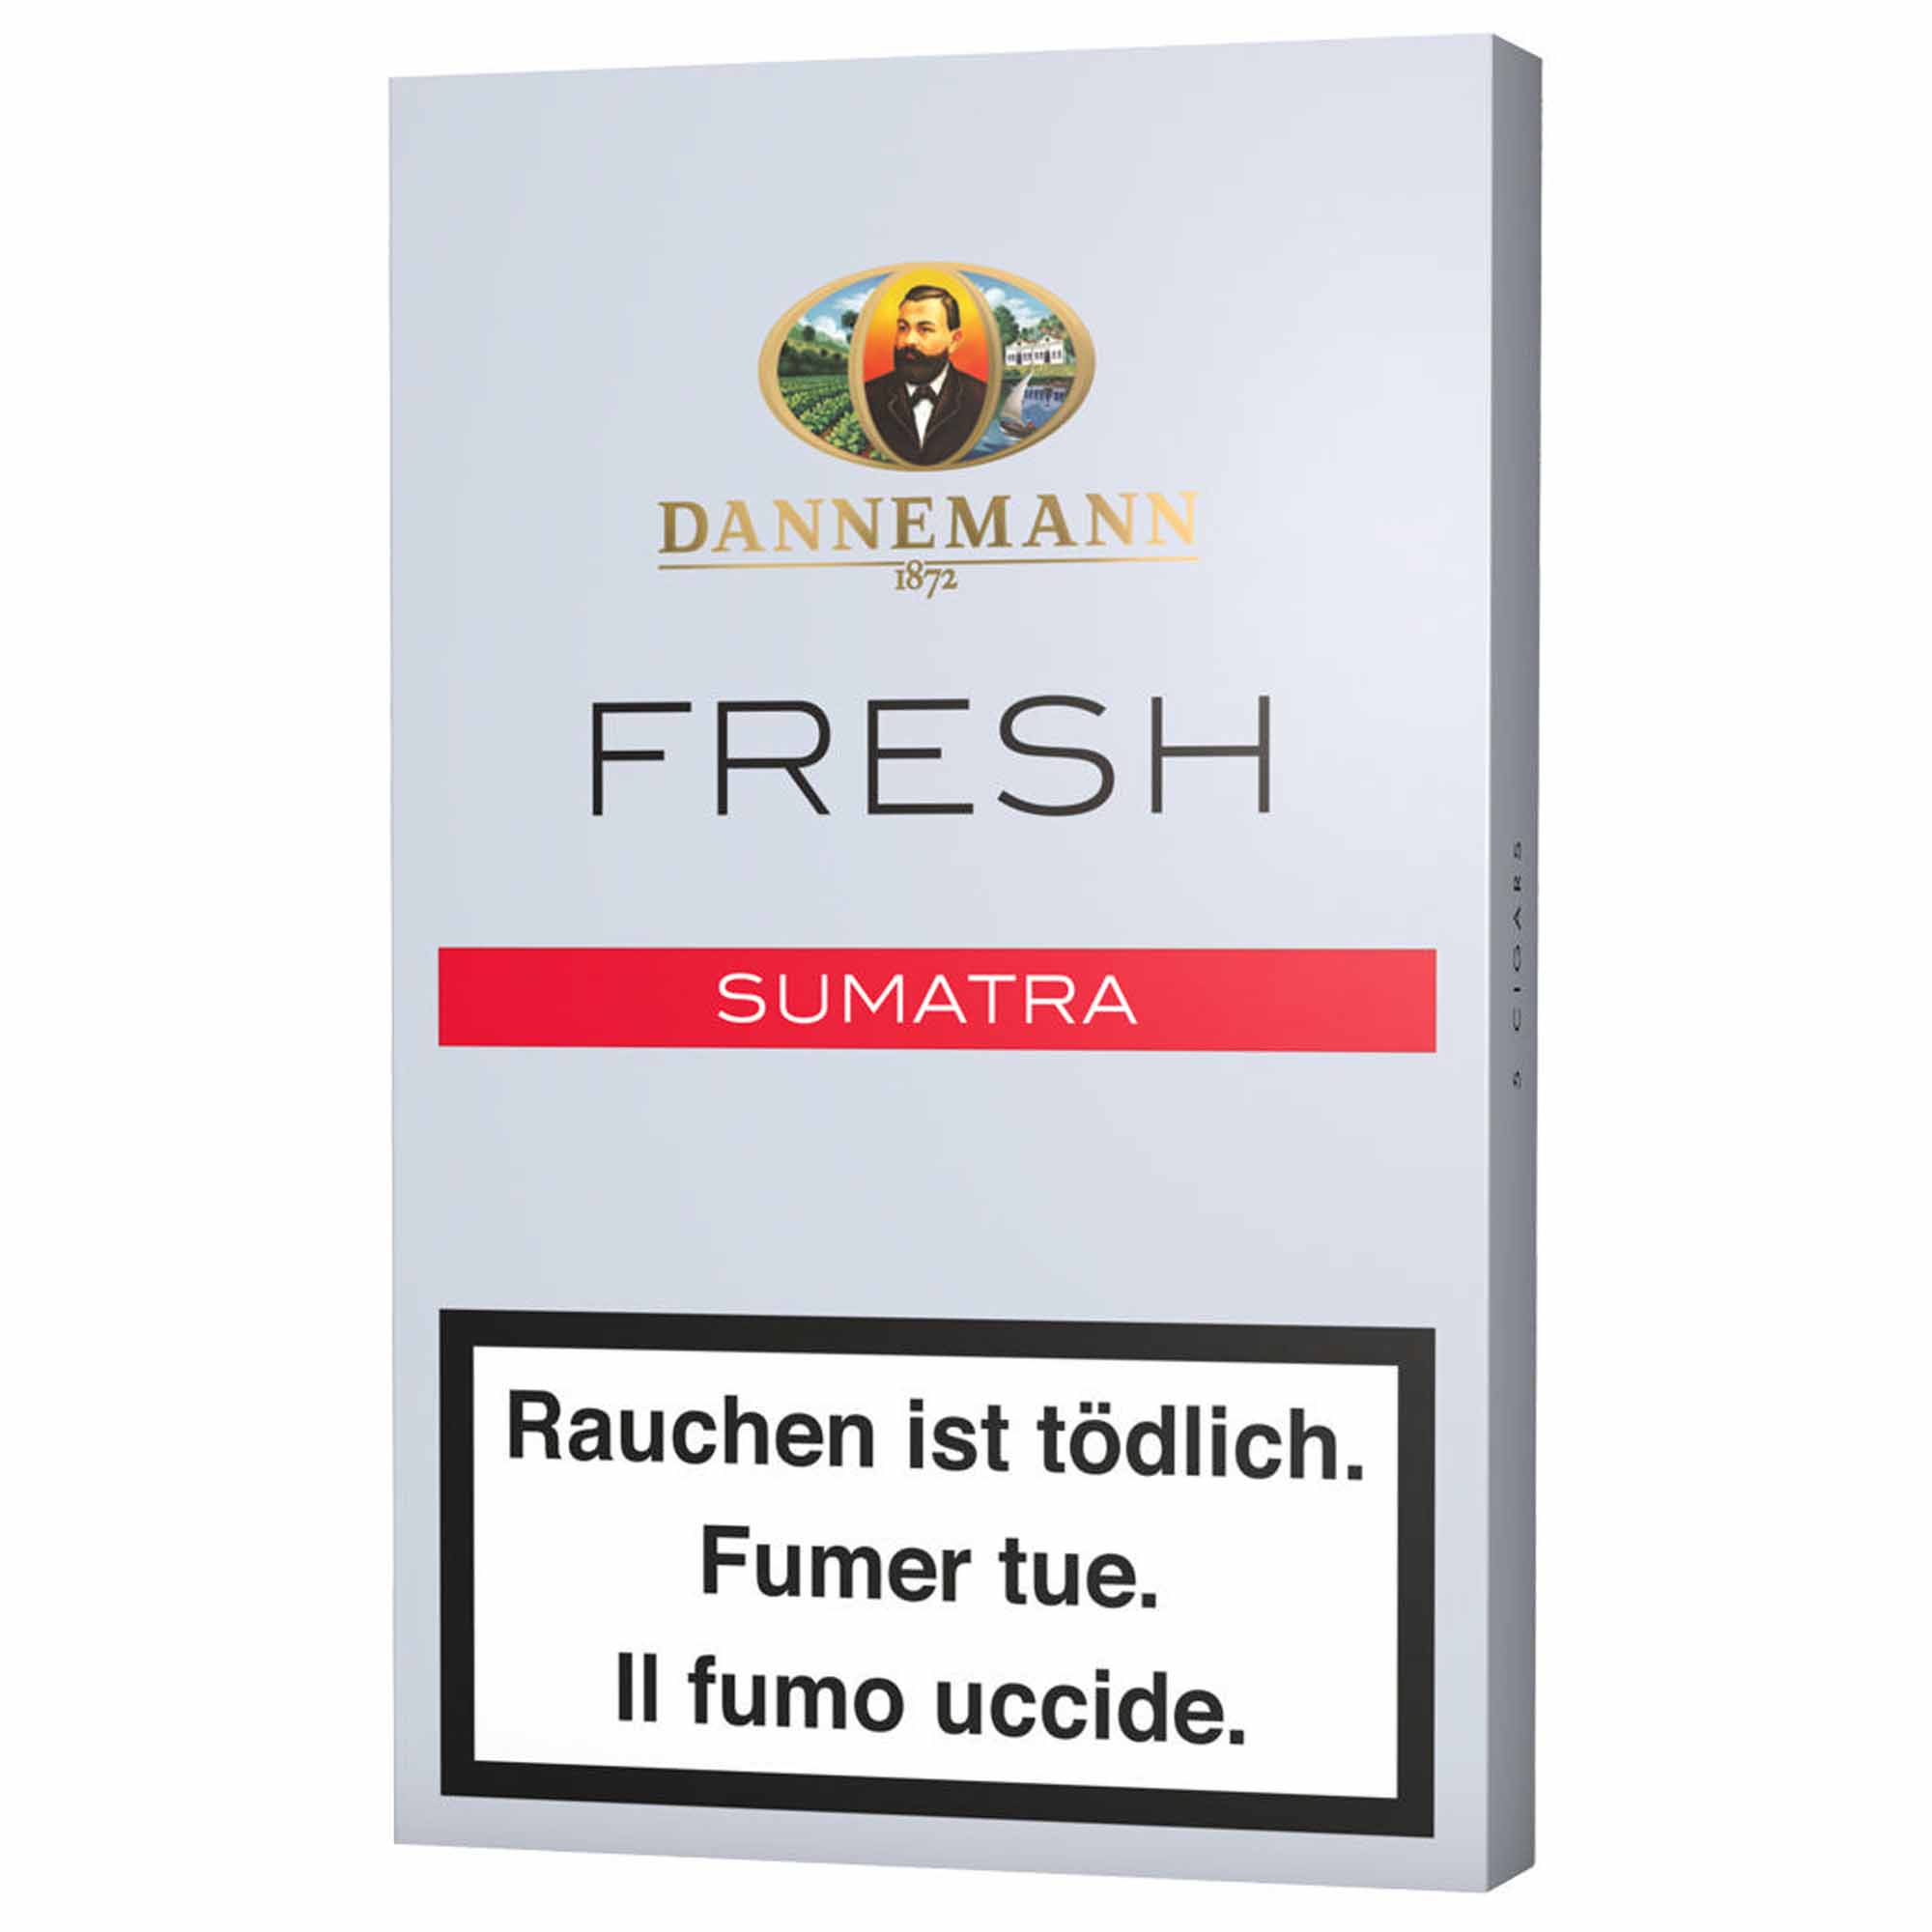 Dannemann Fresh Sumatra 5er Schachtel